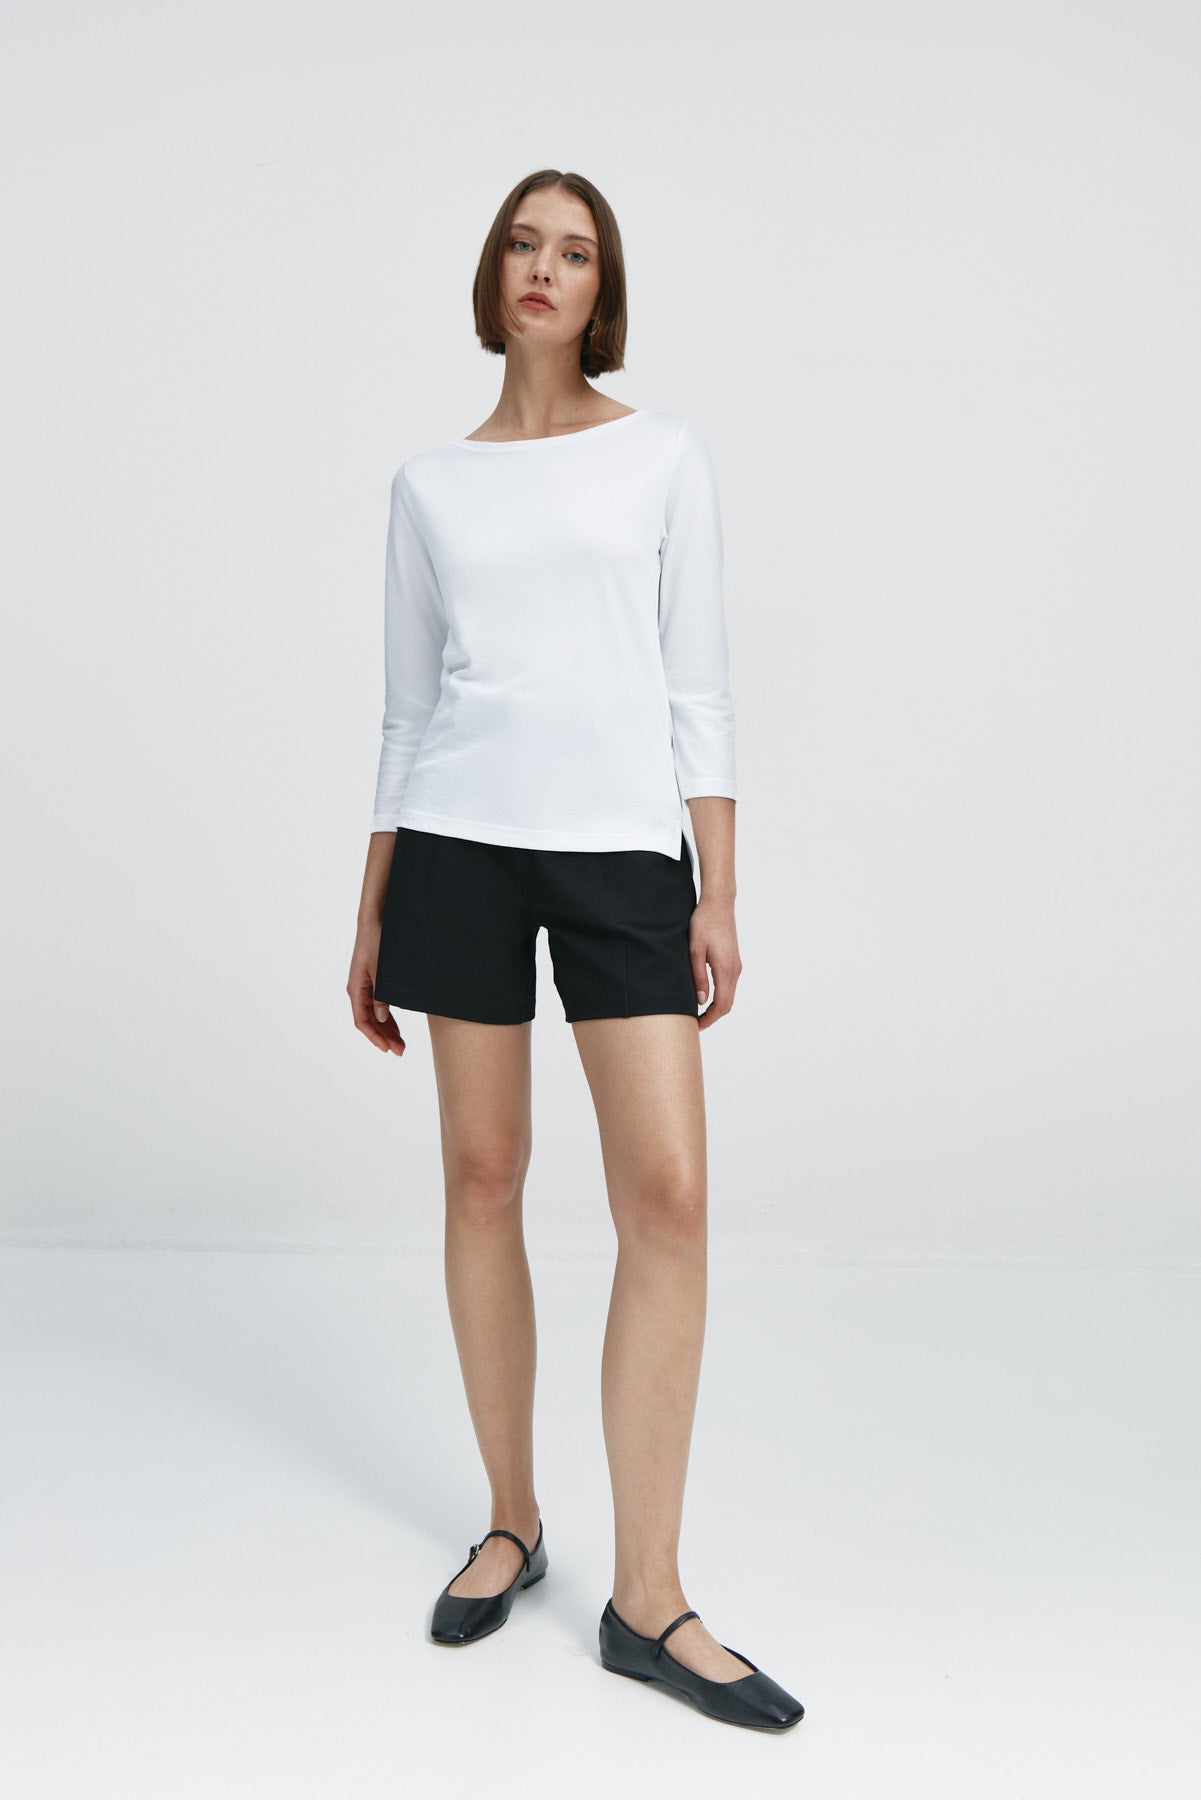 Camiseta para mujer con manga 3/4 y escote barco en color blanco. Prenda básica perfecta para cualquier ocasión. Foto cuerpo entero